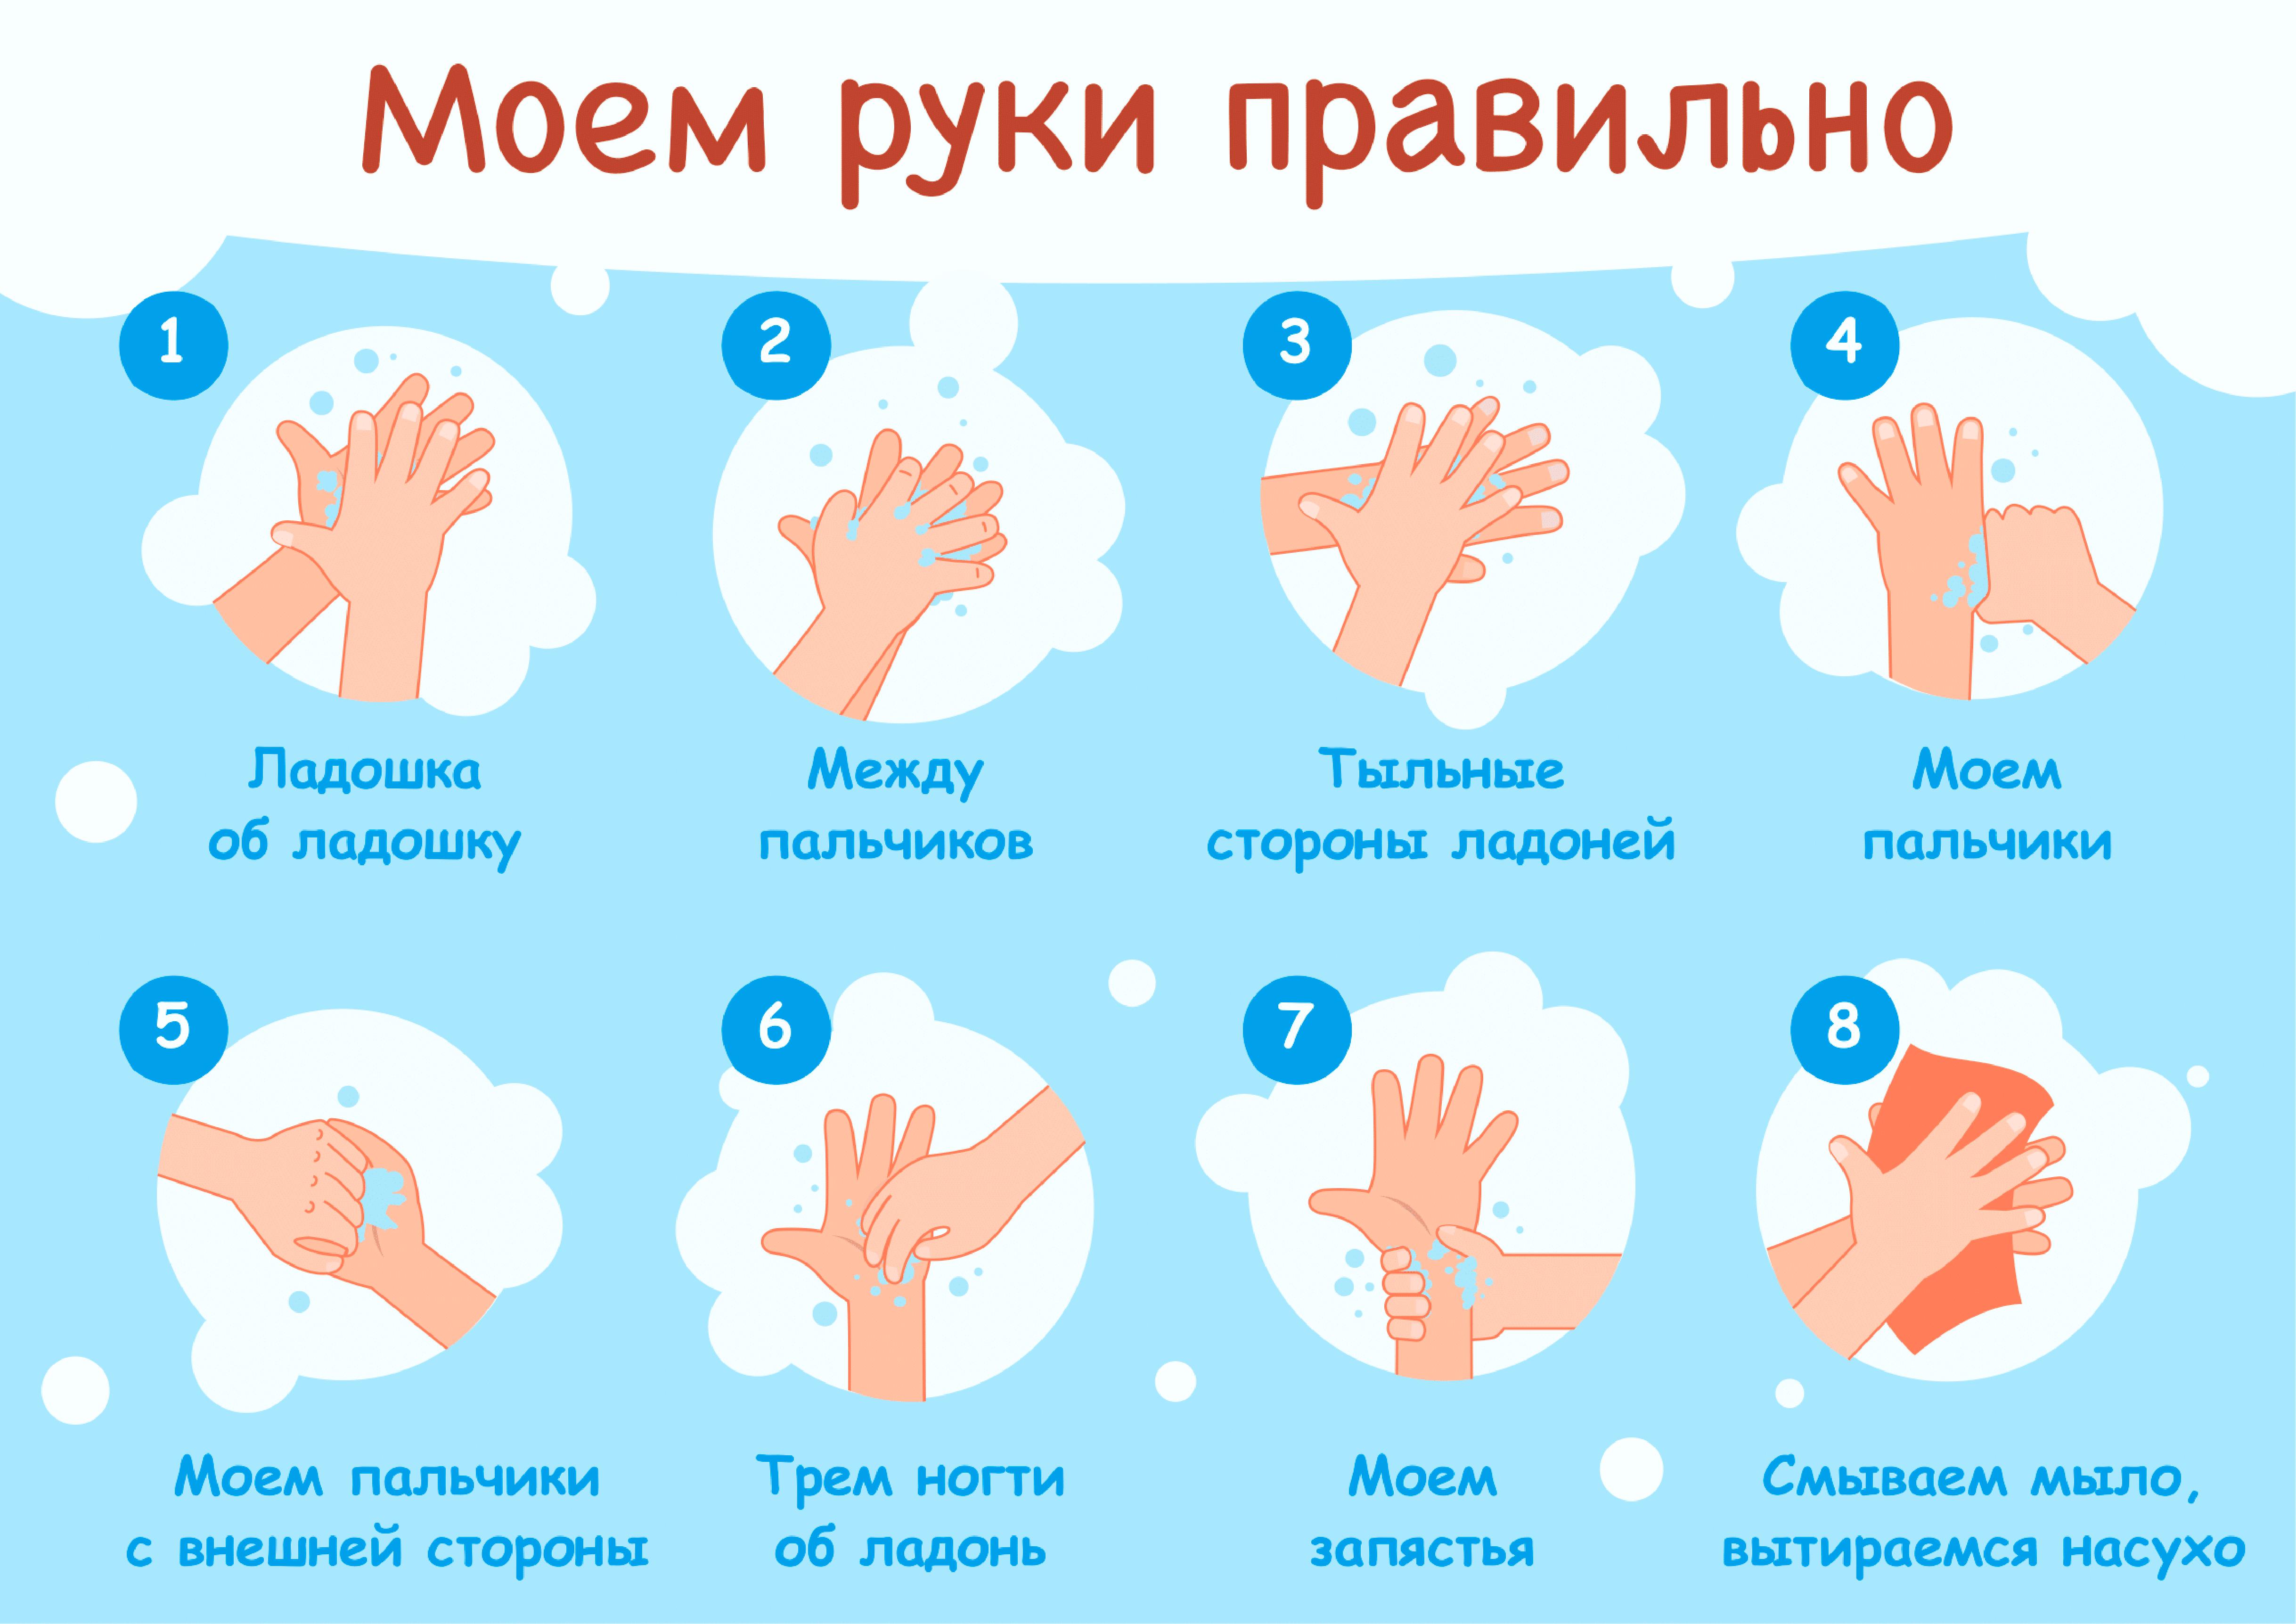 Мытье рук относится к. Мытьё рук. Алгоритм мытья рук. Как правильн Оымт ьруки. КККМ правильн омыть руки. Мытье рук дошкольников.